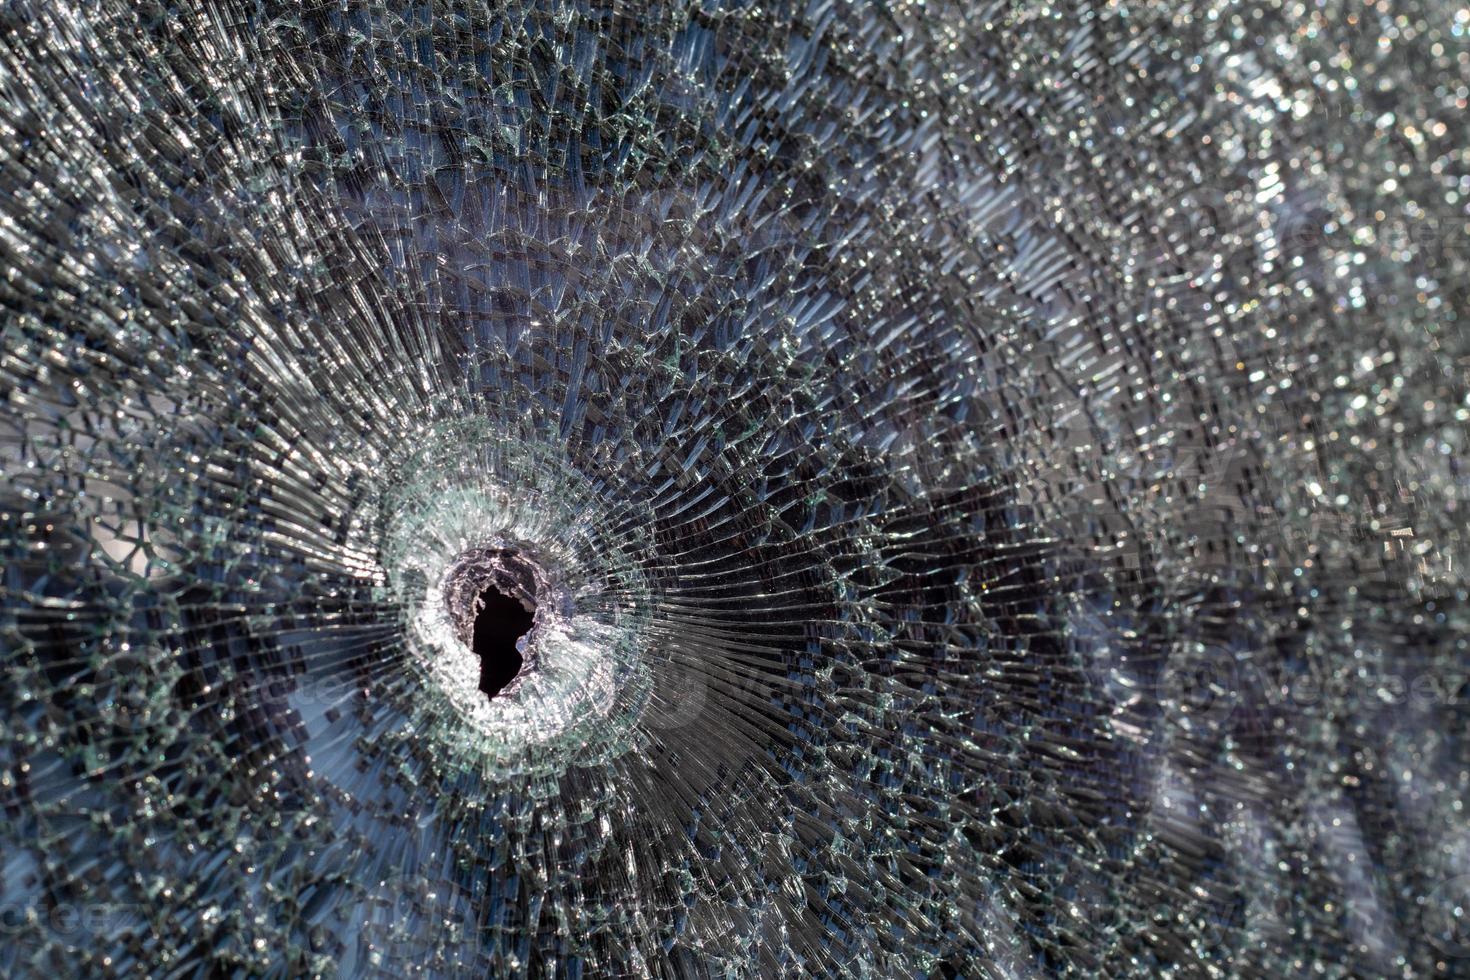 Löcher in der Windschutzscheibe des Autos, es wurde aus einer Schusswaffe geschossen. Einschusslöcher. Windschutzscheibe zerschlagen, kaputtes und beschädigtes Auto. Die Kugel hinterließ ein zerbrochenes Loch im Glas. foto